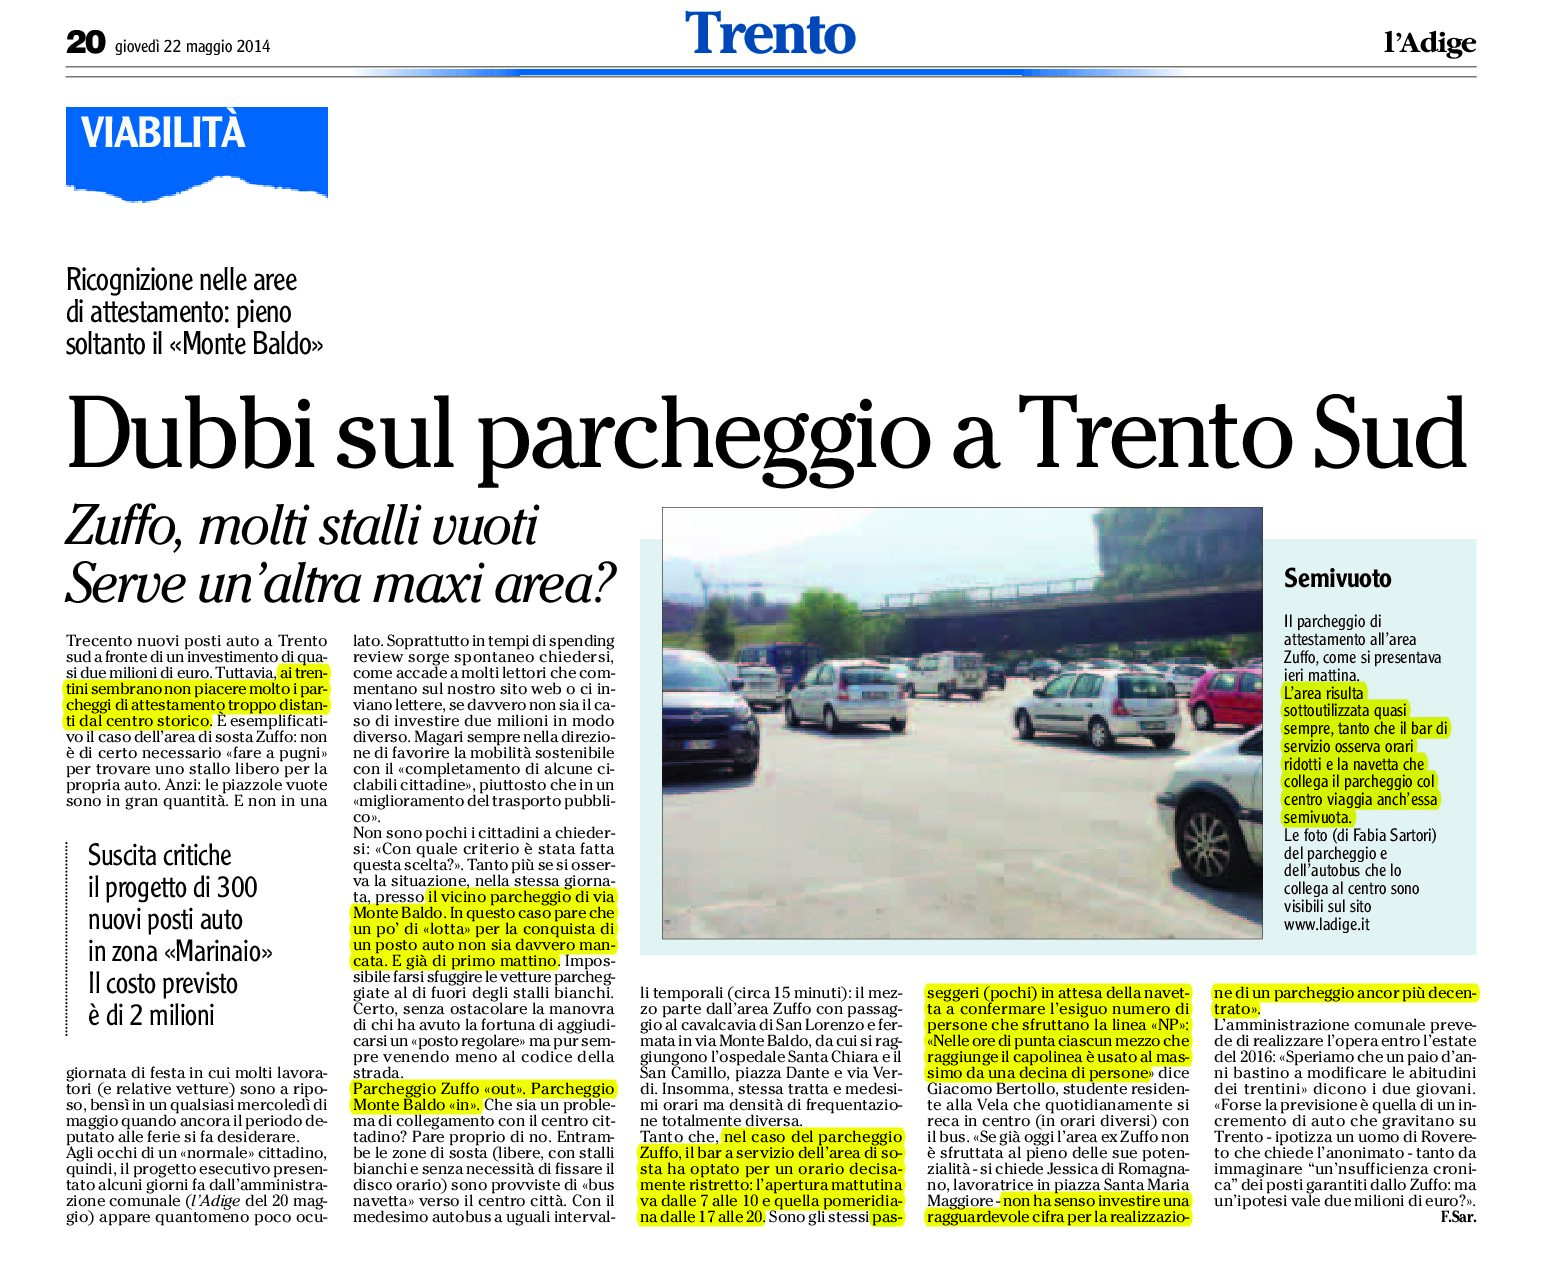 Trento: dubbi sul futuro parcheggio a Trento sud